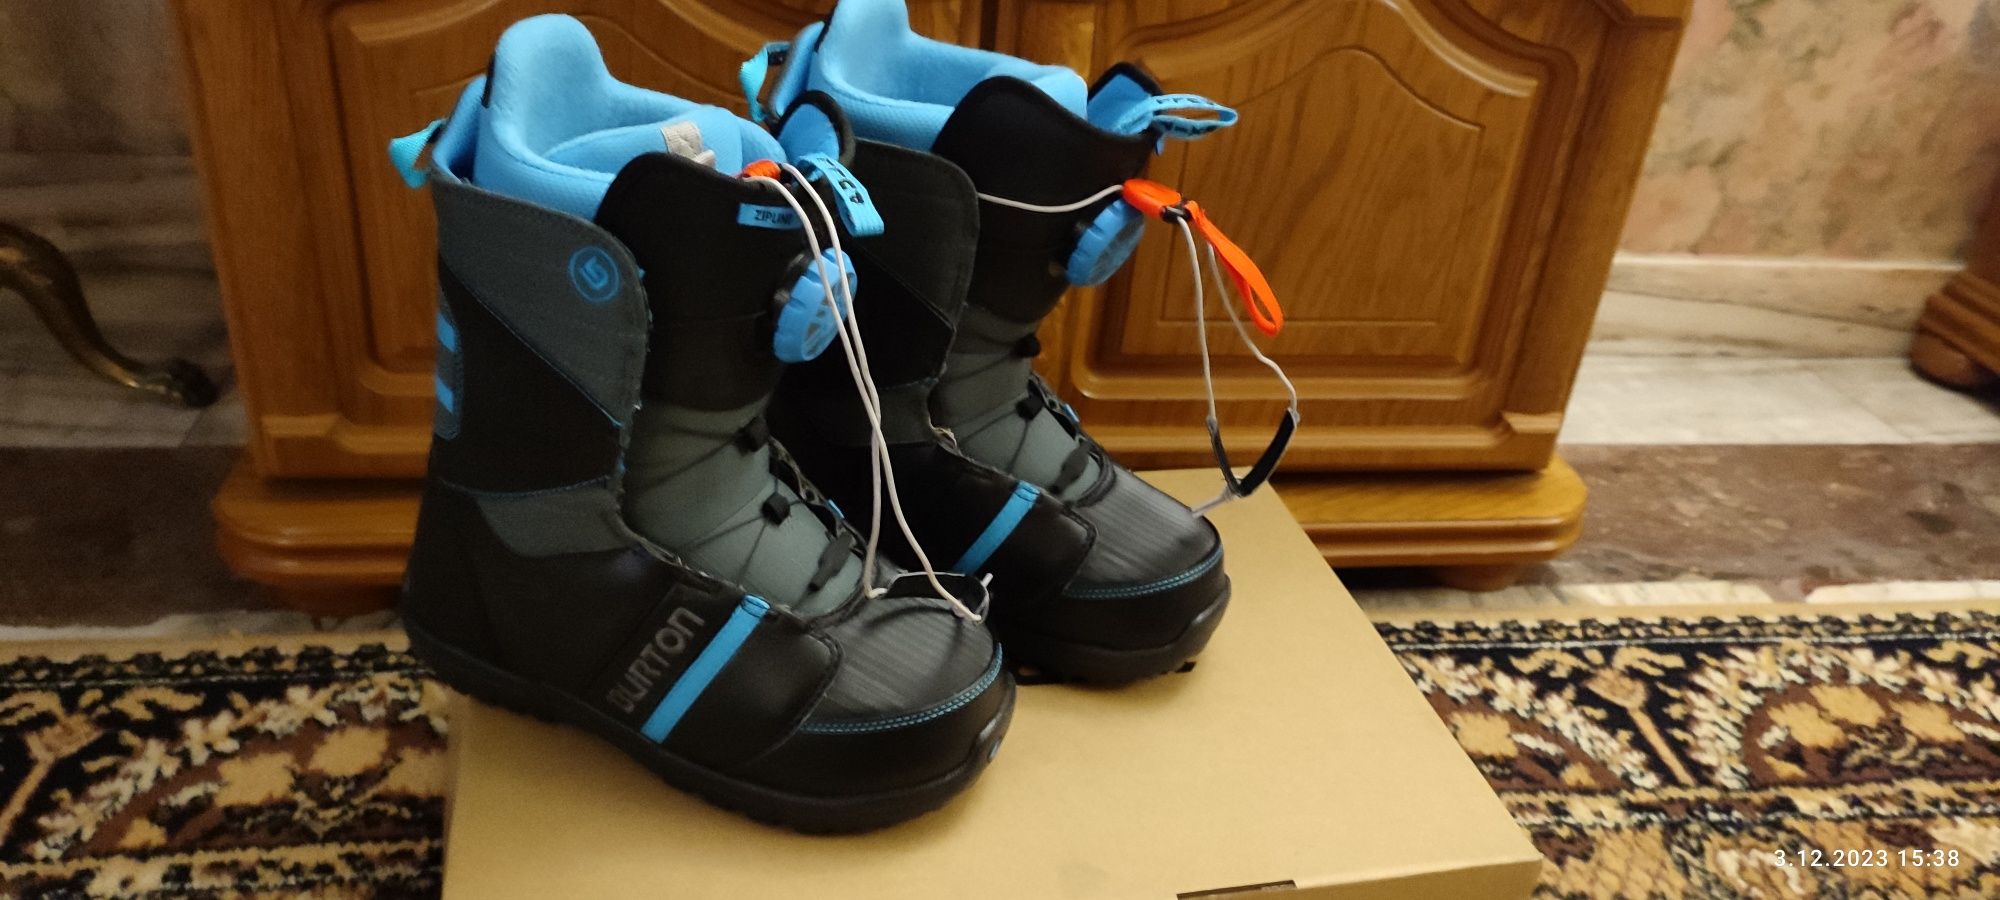 Buty snowboardowe Burton NOWE, długość wkładki 24.5